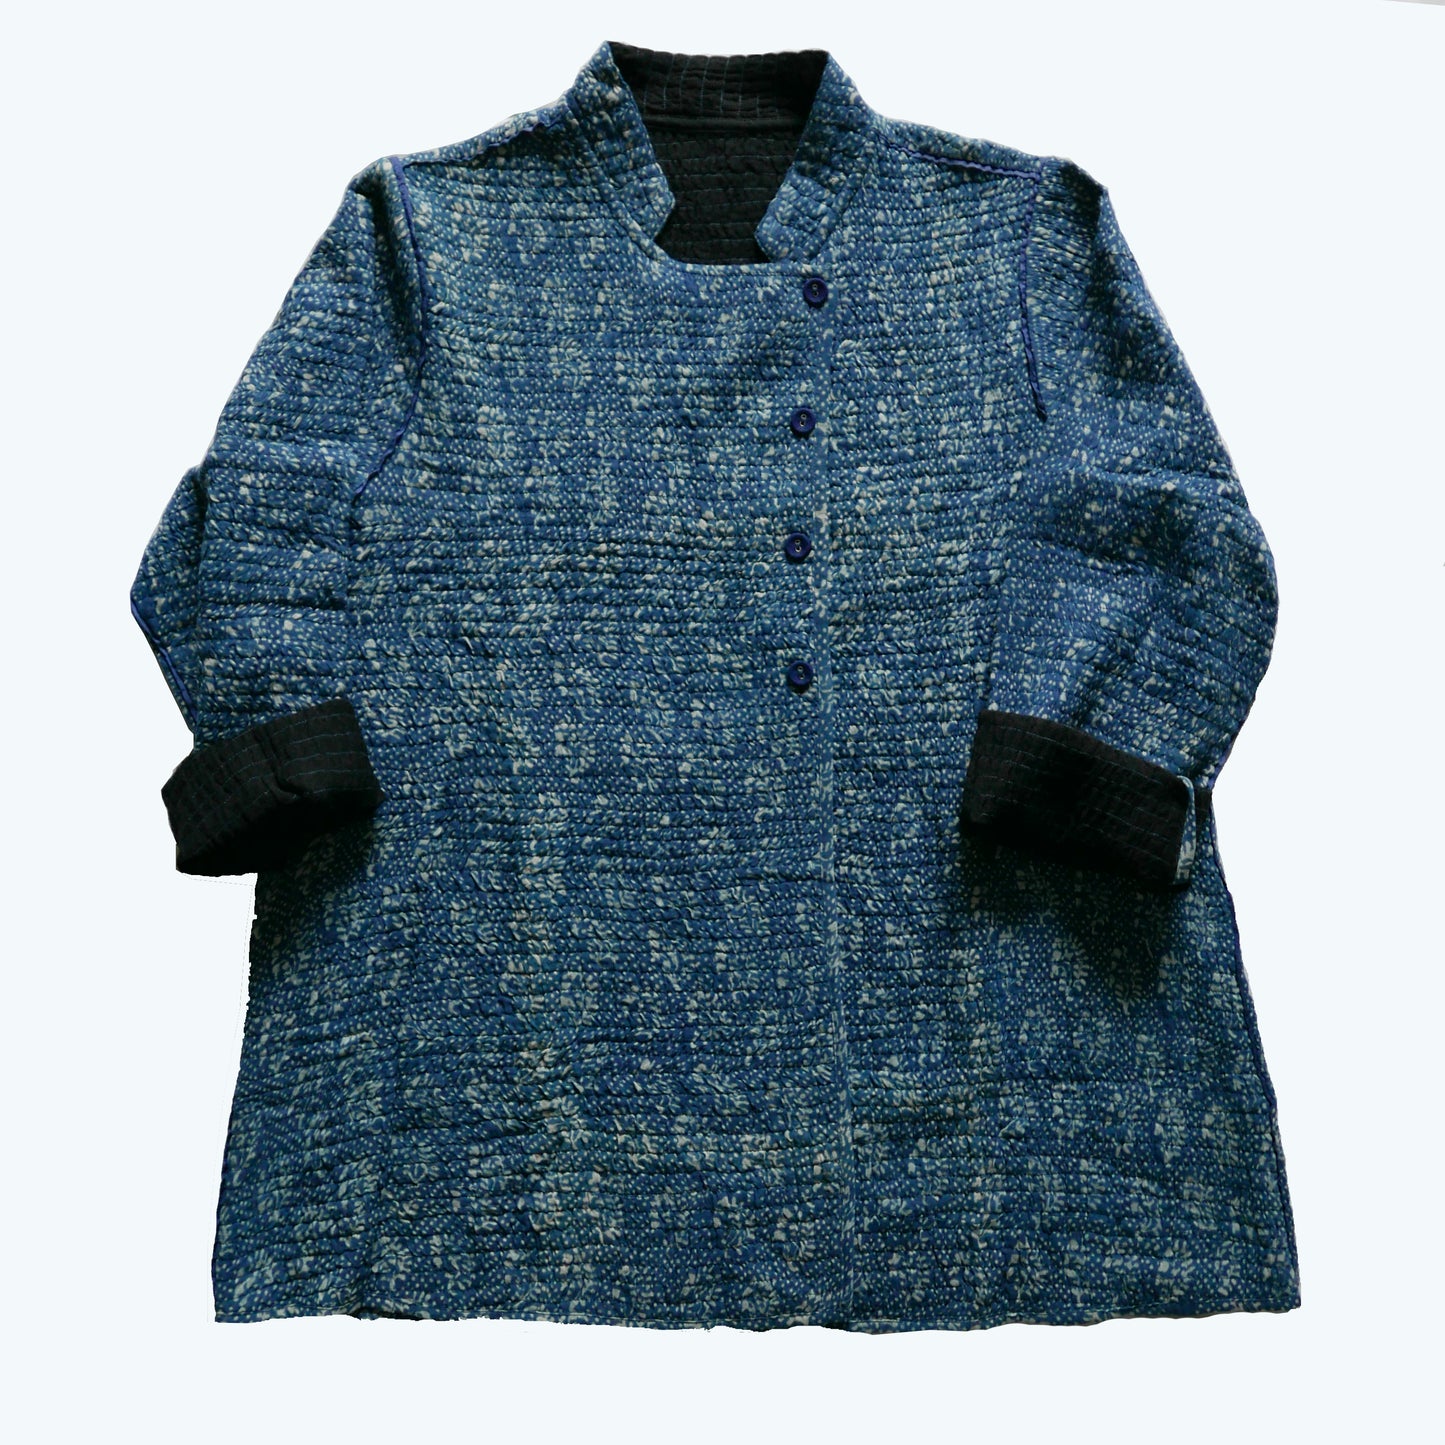 India, Indigene, Smocked Print & Wool Short Jacket (Reversible)